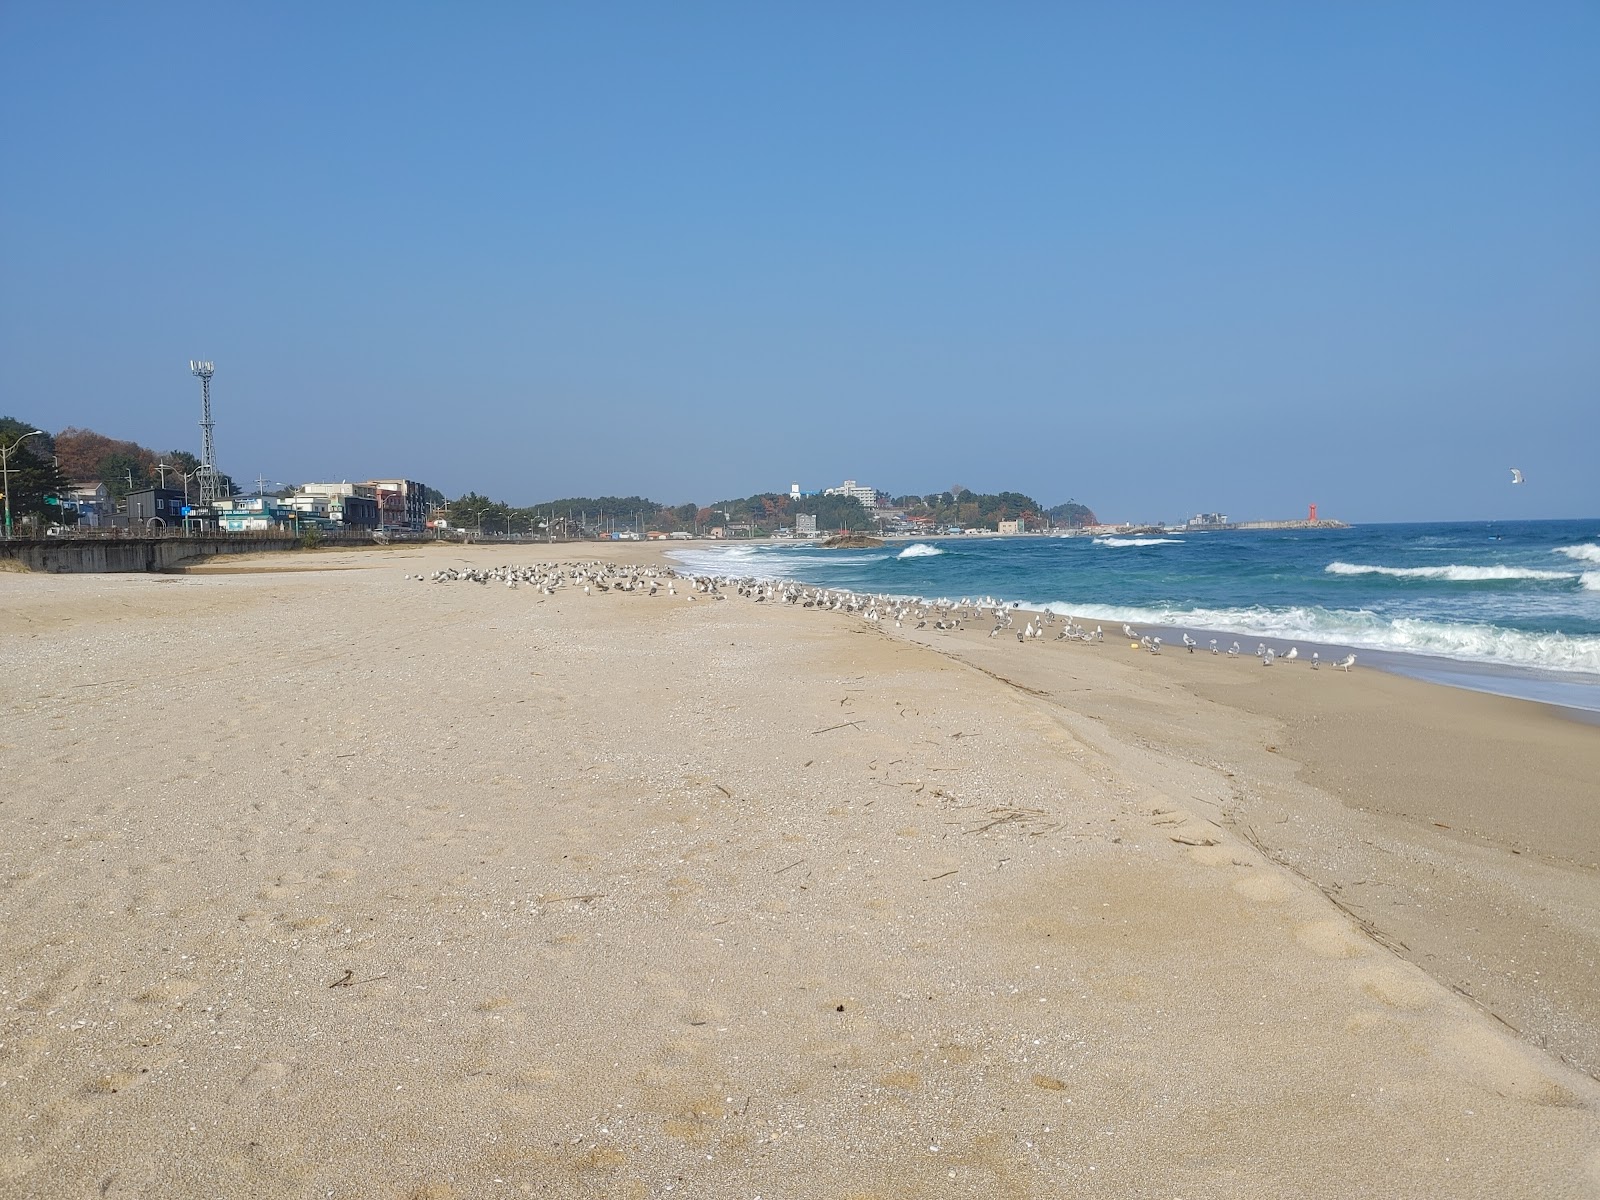 Fotografie cu Wonpo Beach zonele de facilități